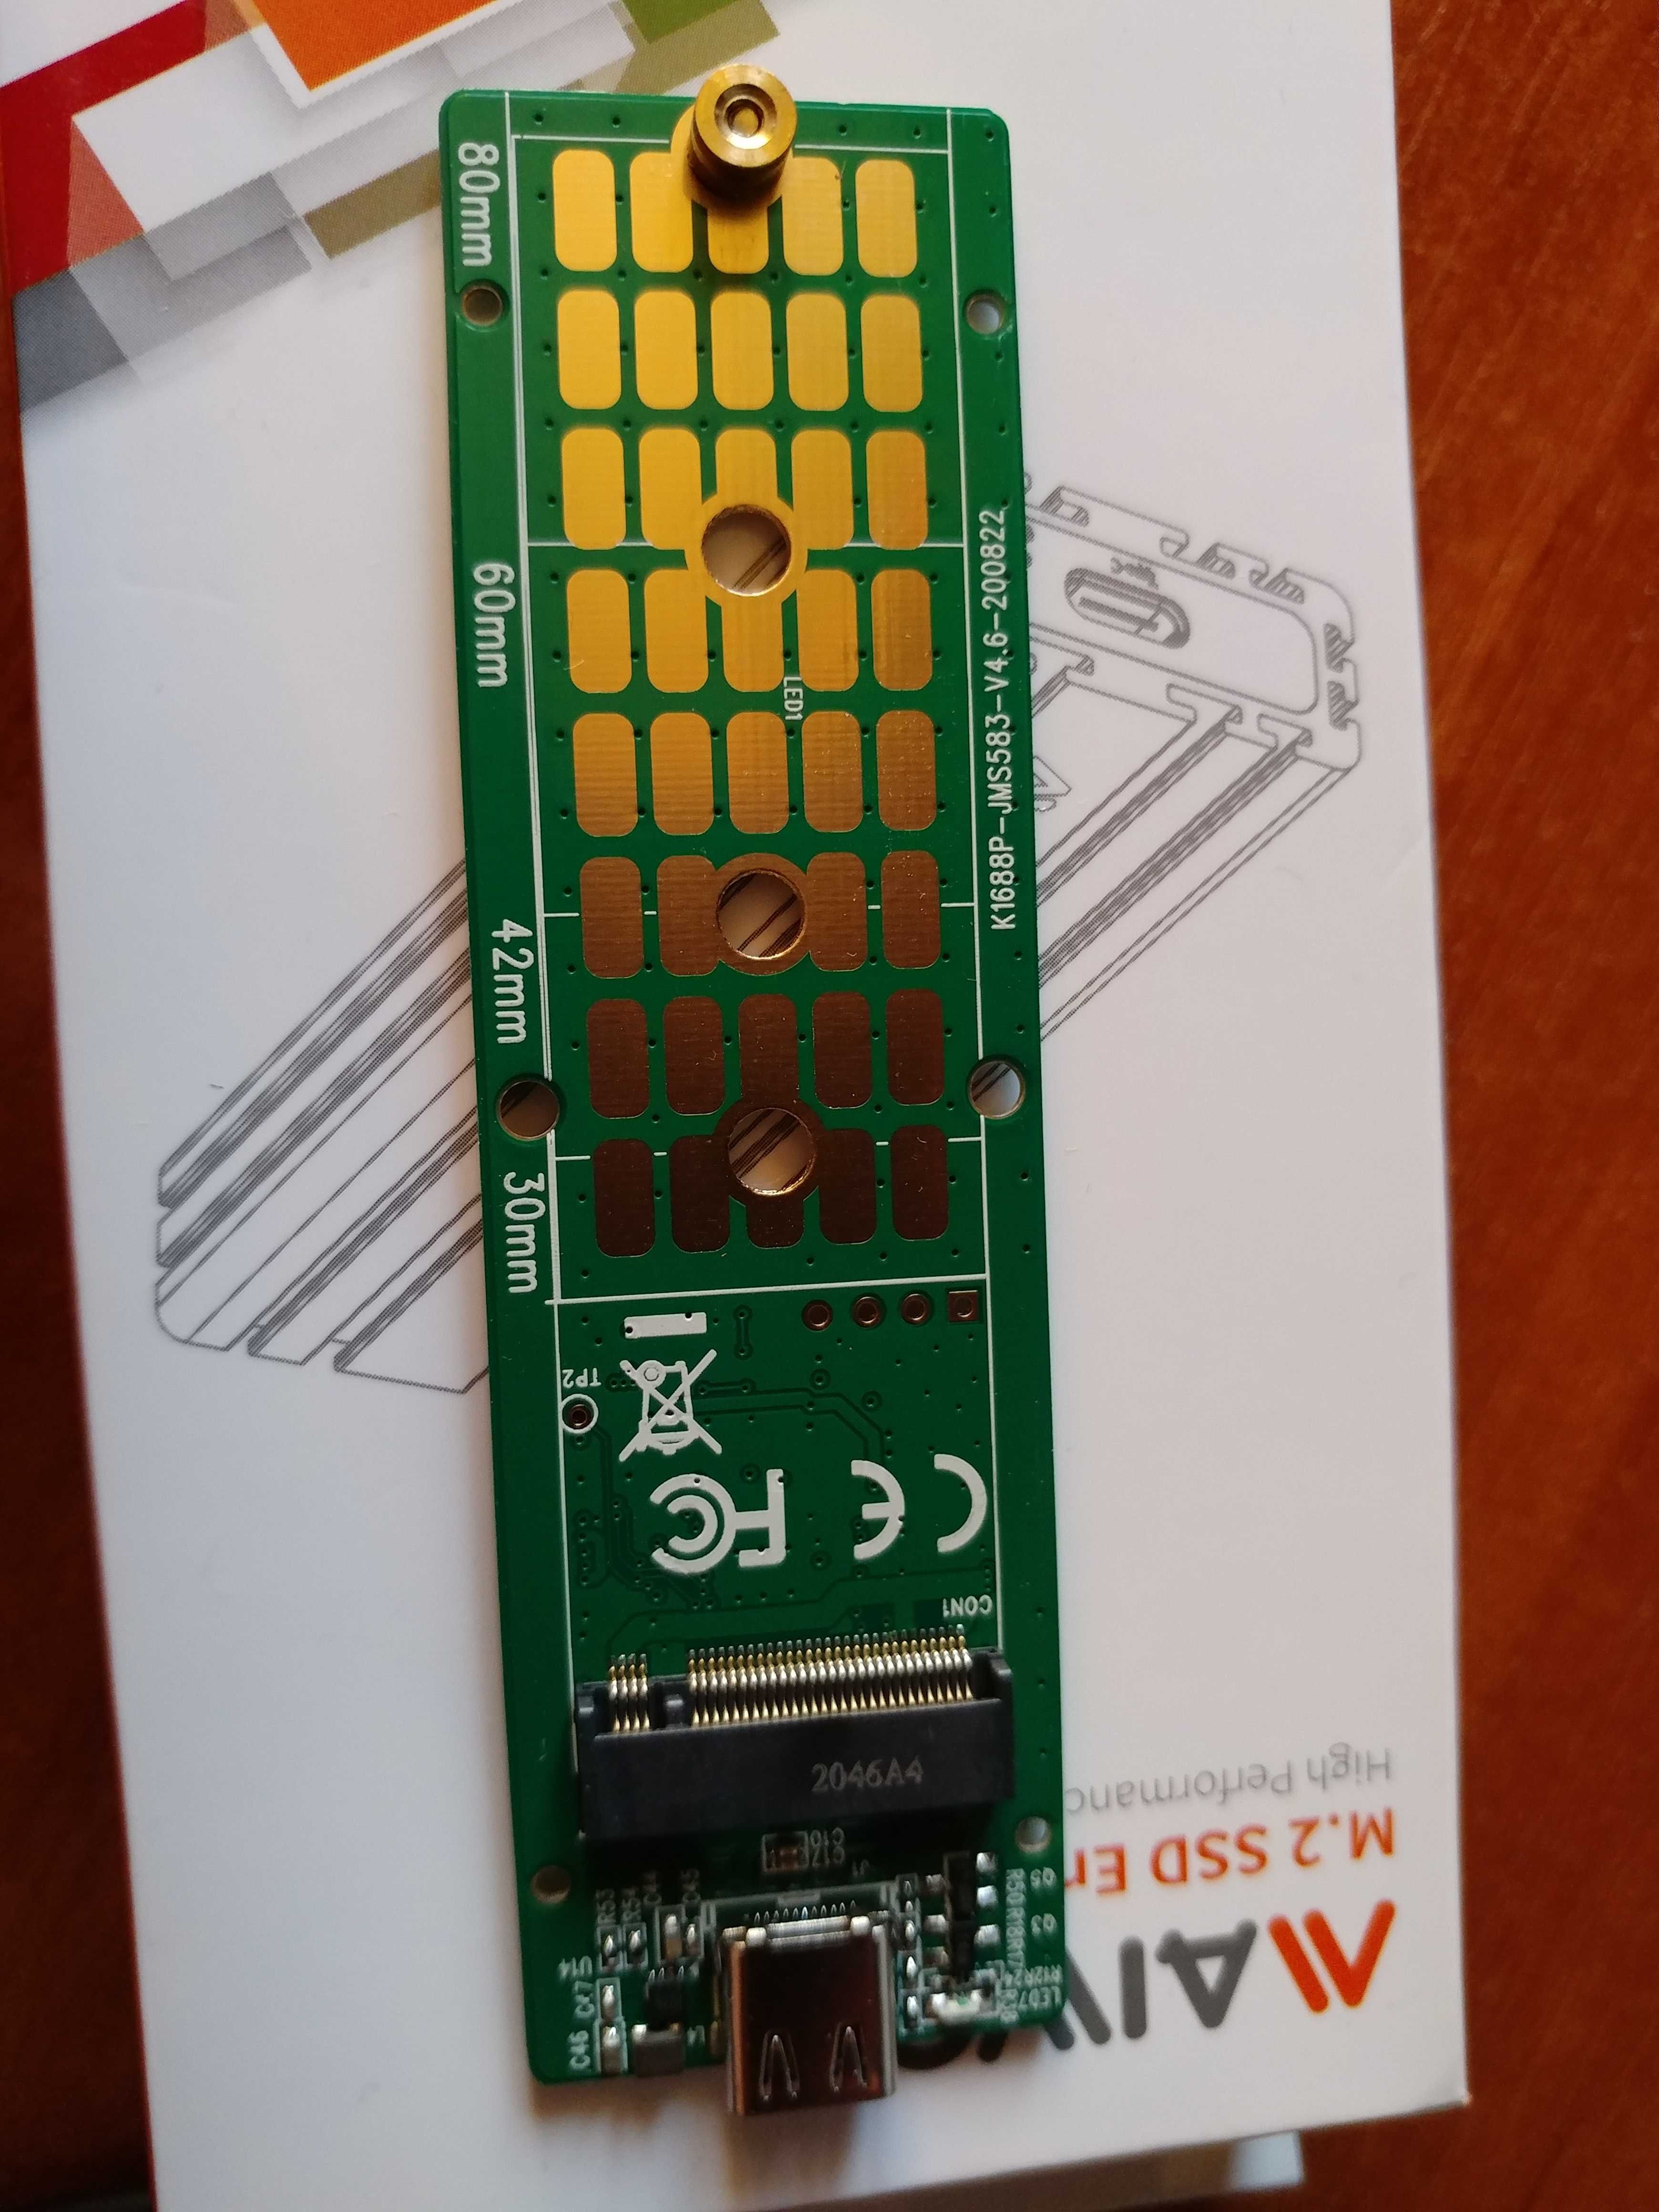 Внешний карман MAIWO K1686P M.2 SSD to USB 3.1 Space Gray